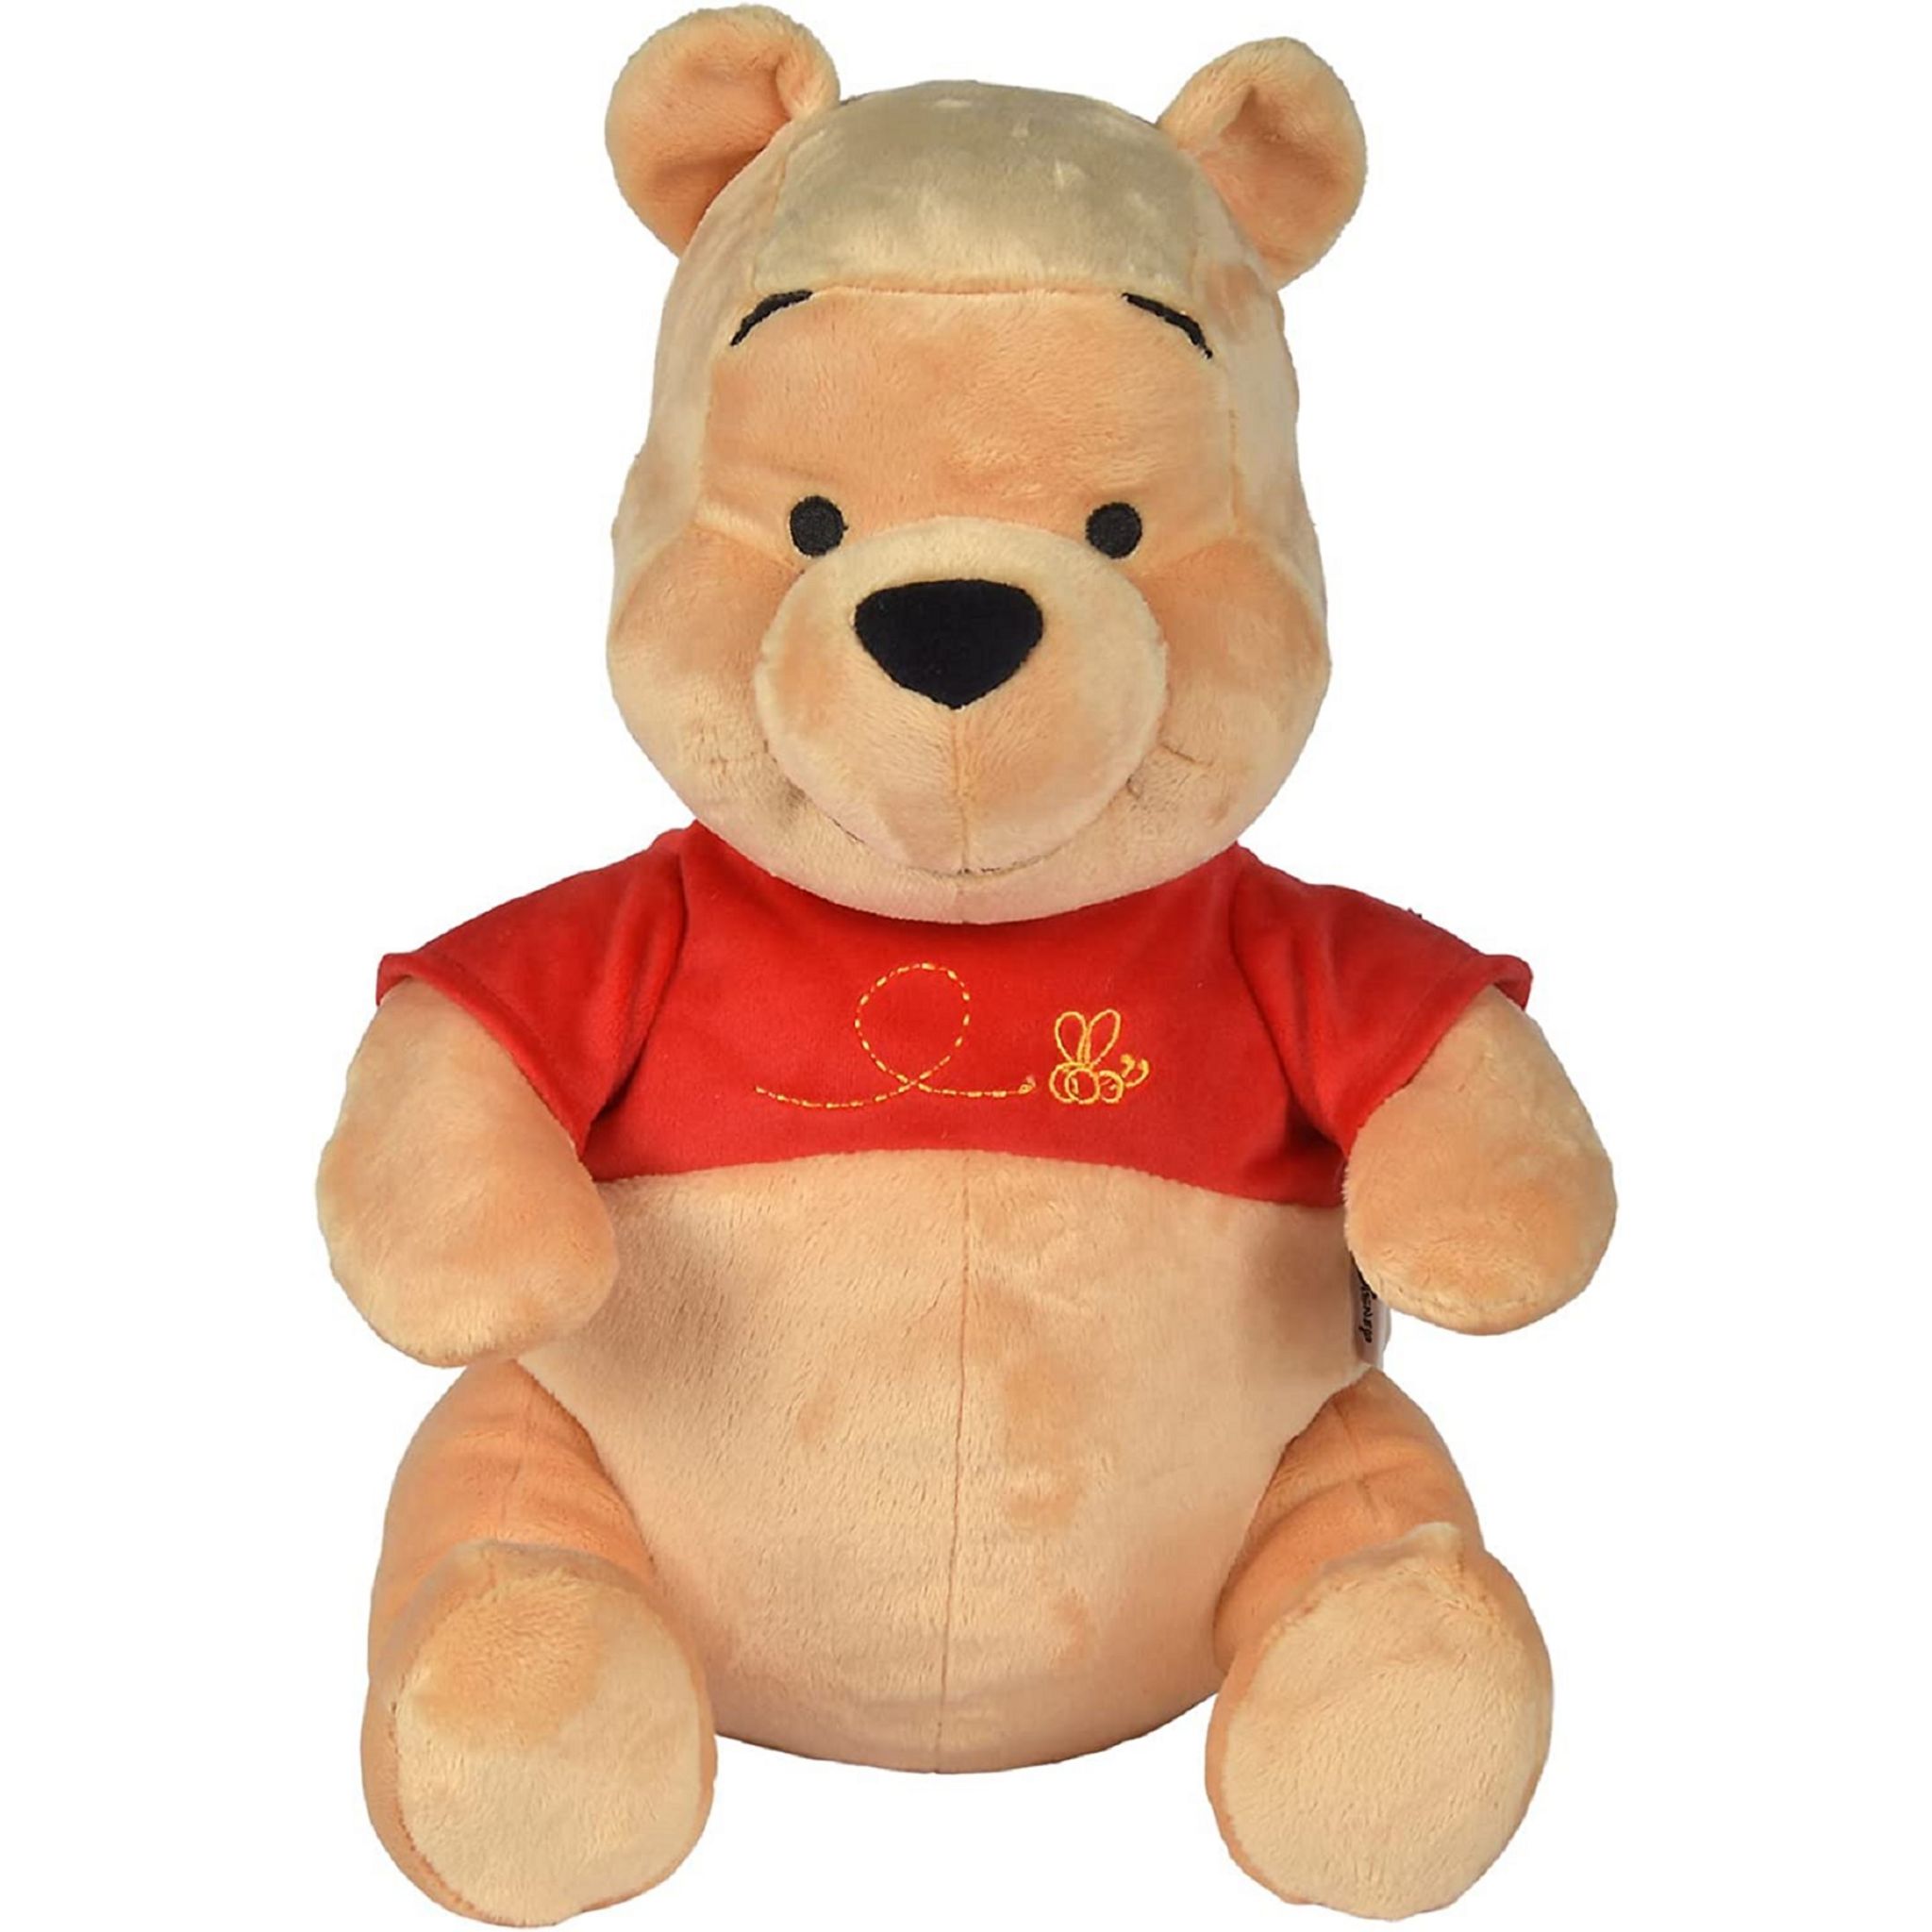 Cadeaux Entreprise Publicitaire - Peluche Disney Winnie l'ourson bébé